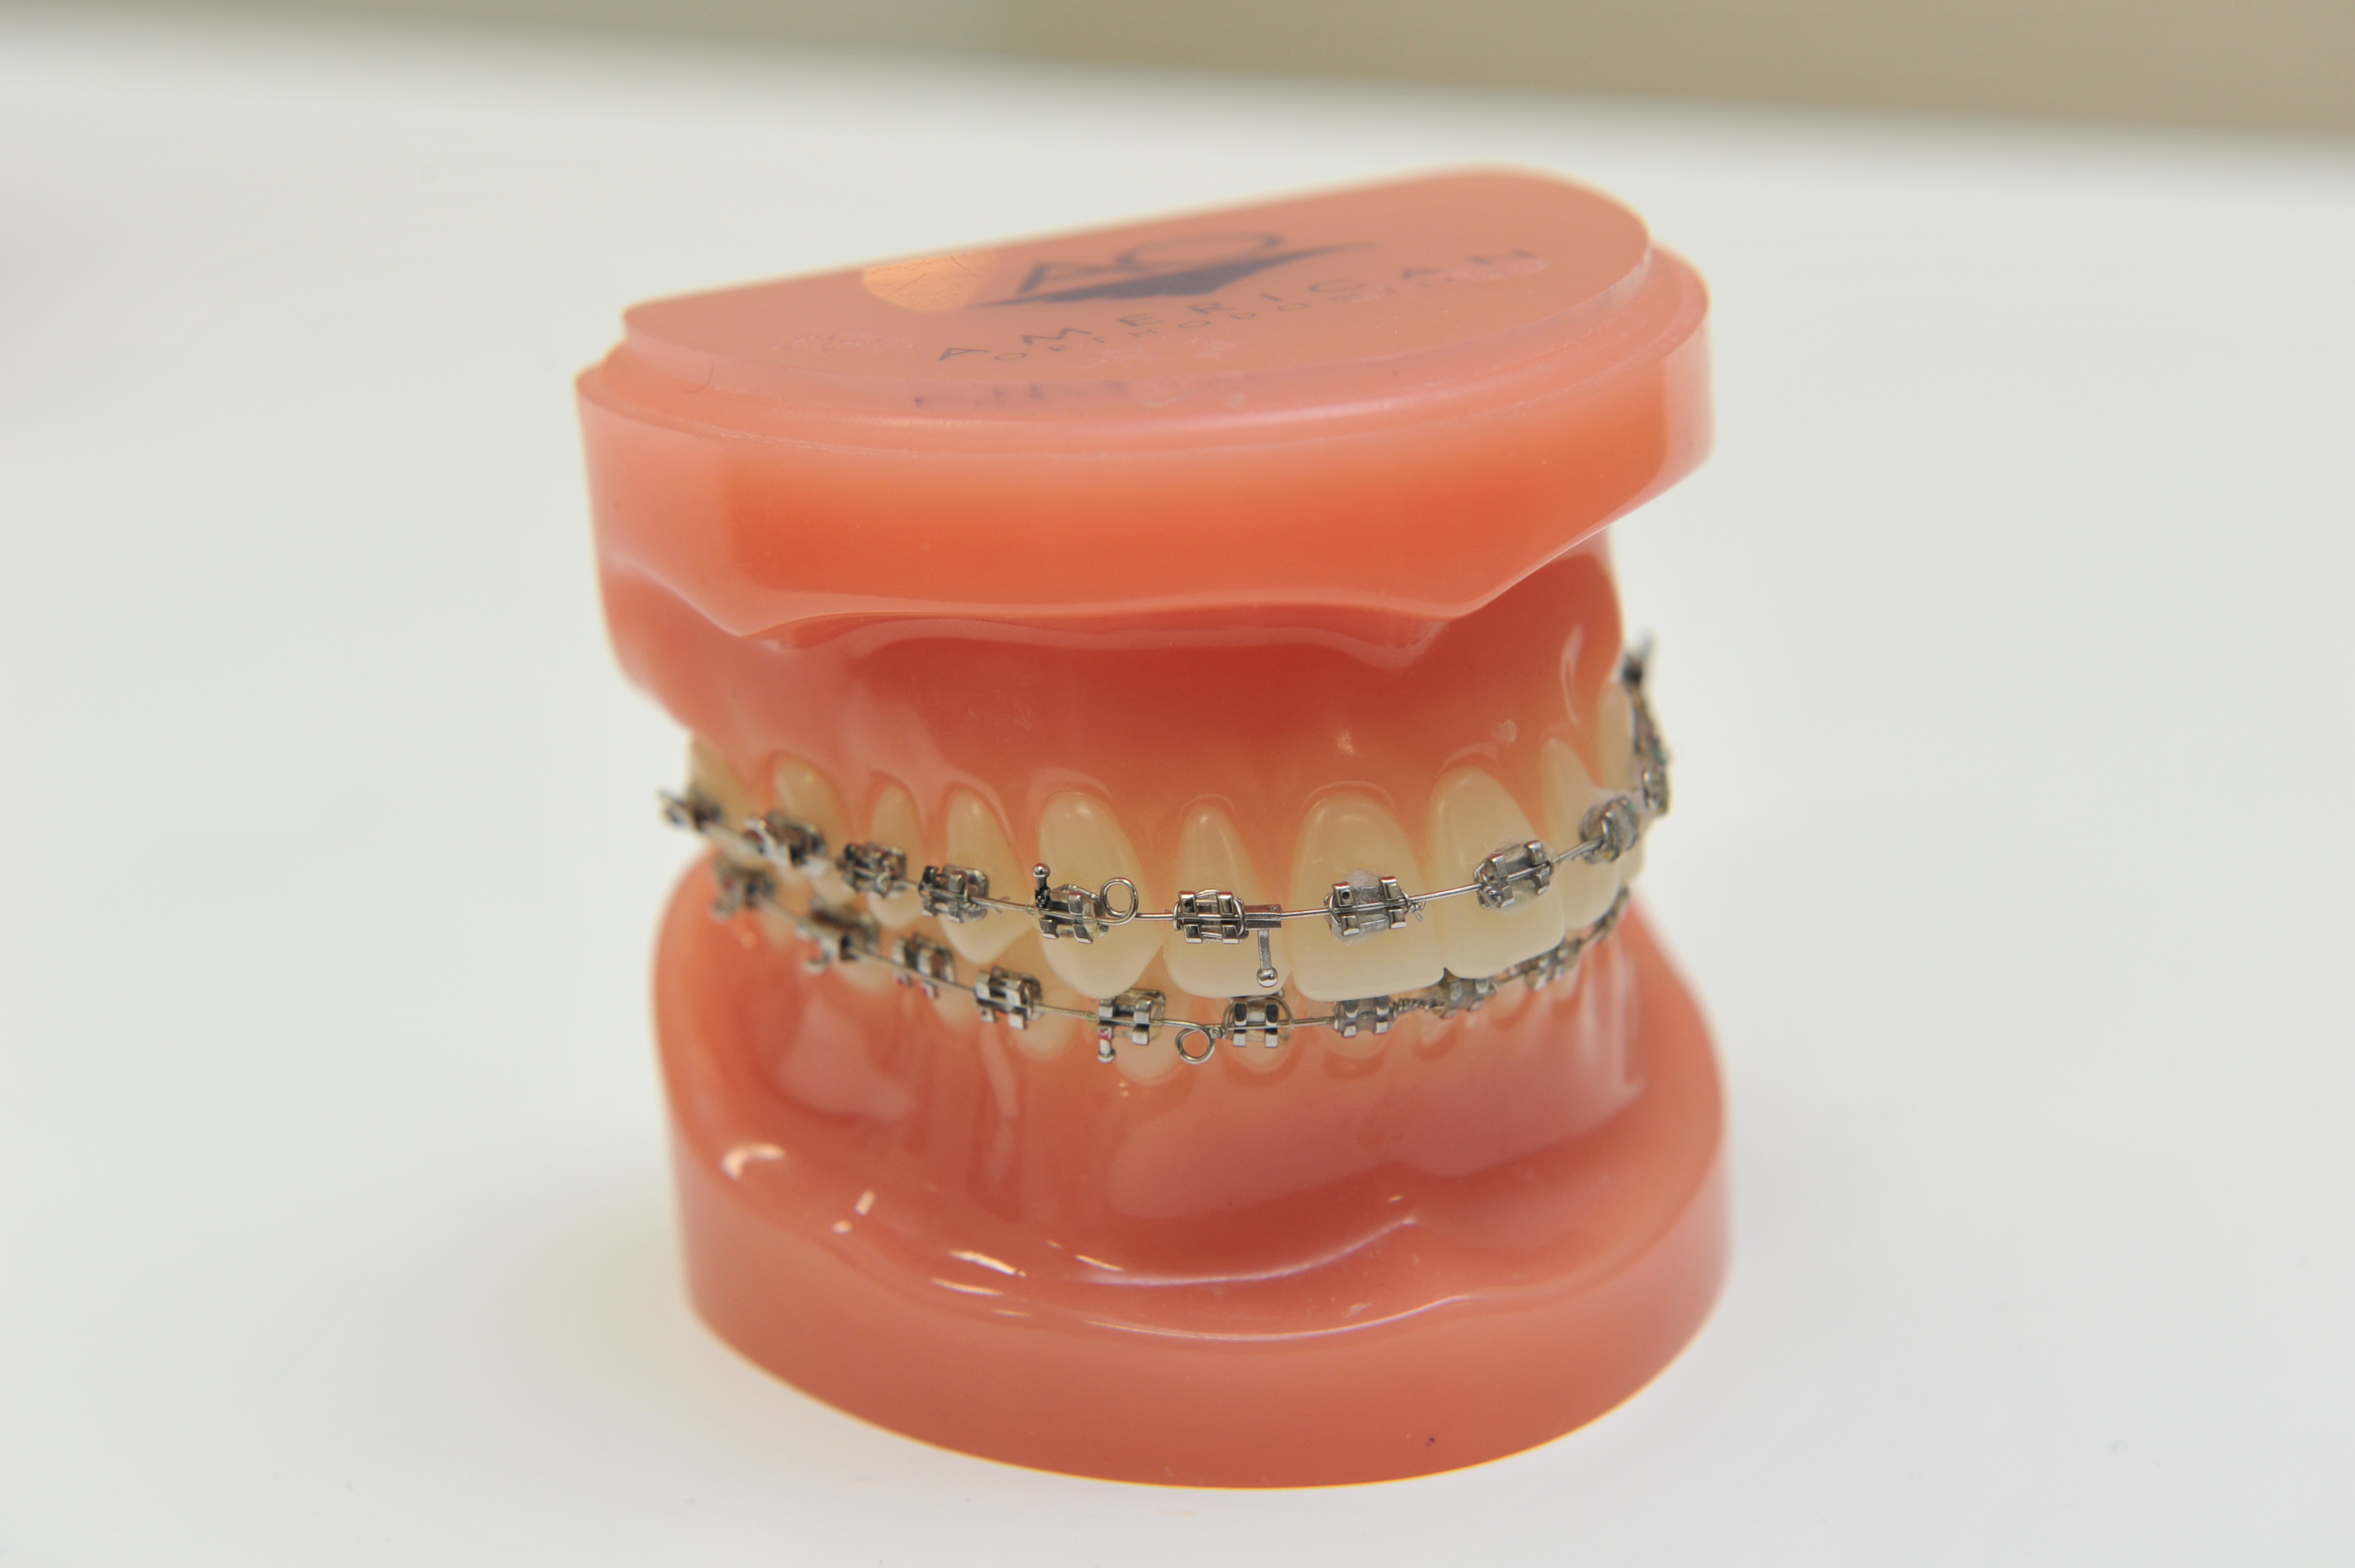 患者様のご相談を紹介-前歯の歯列矯正のことで-